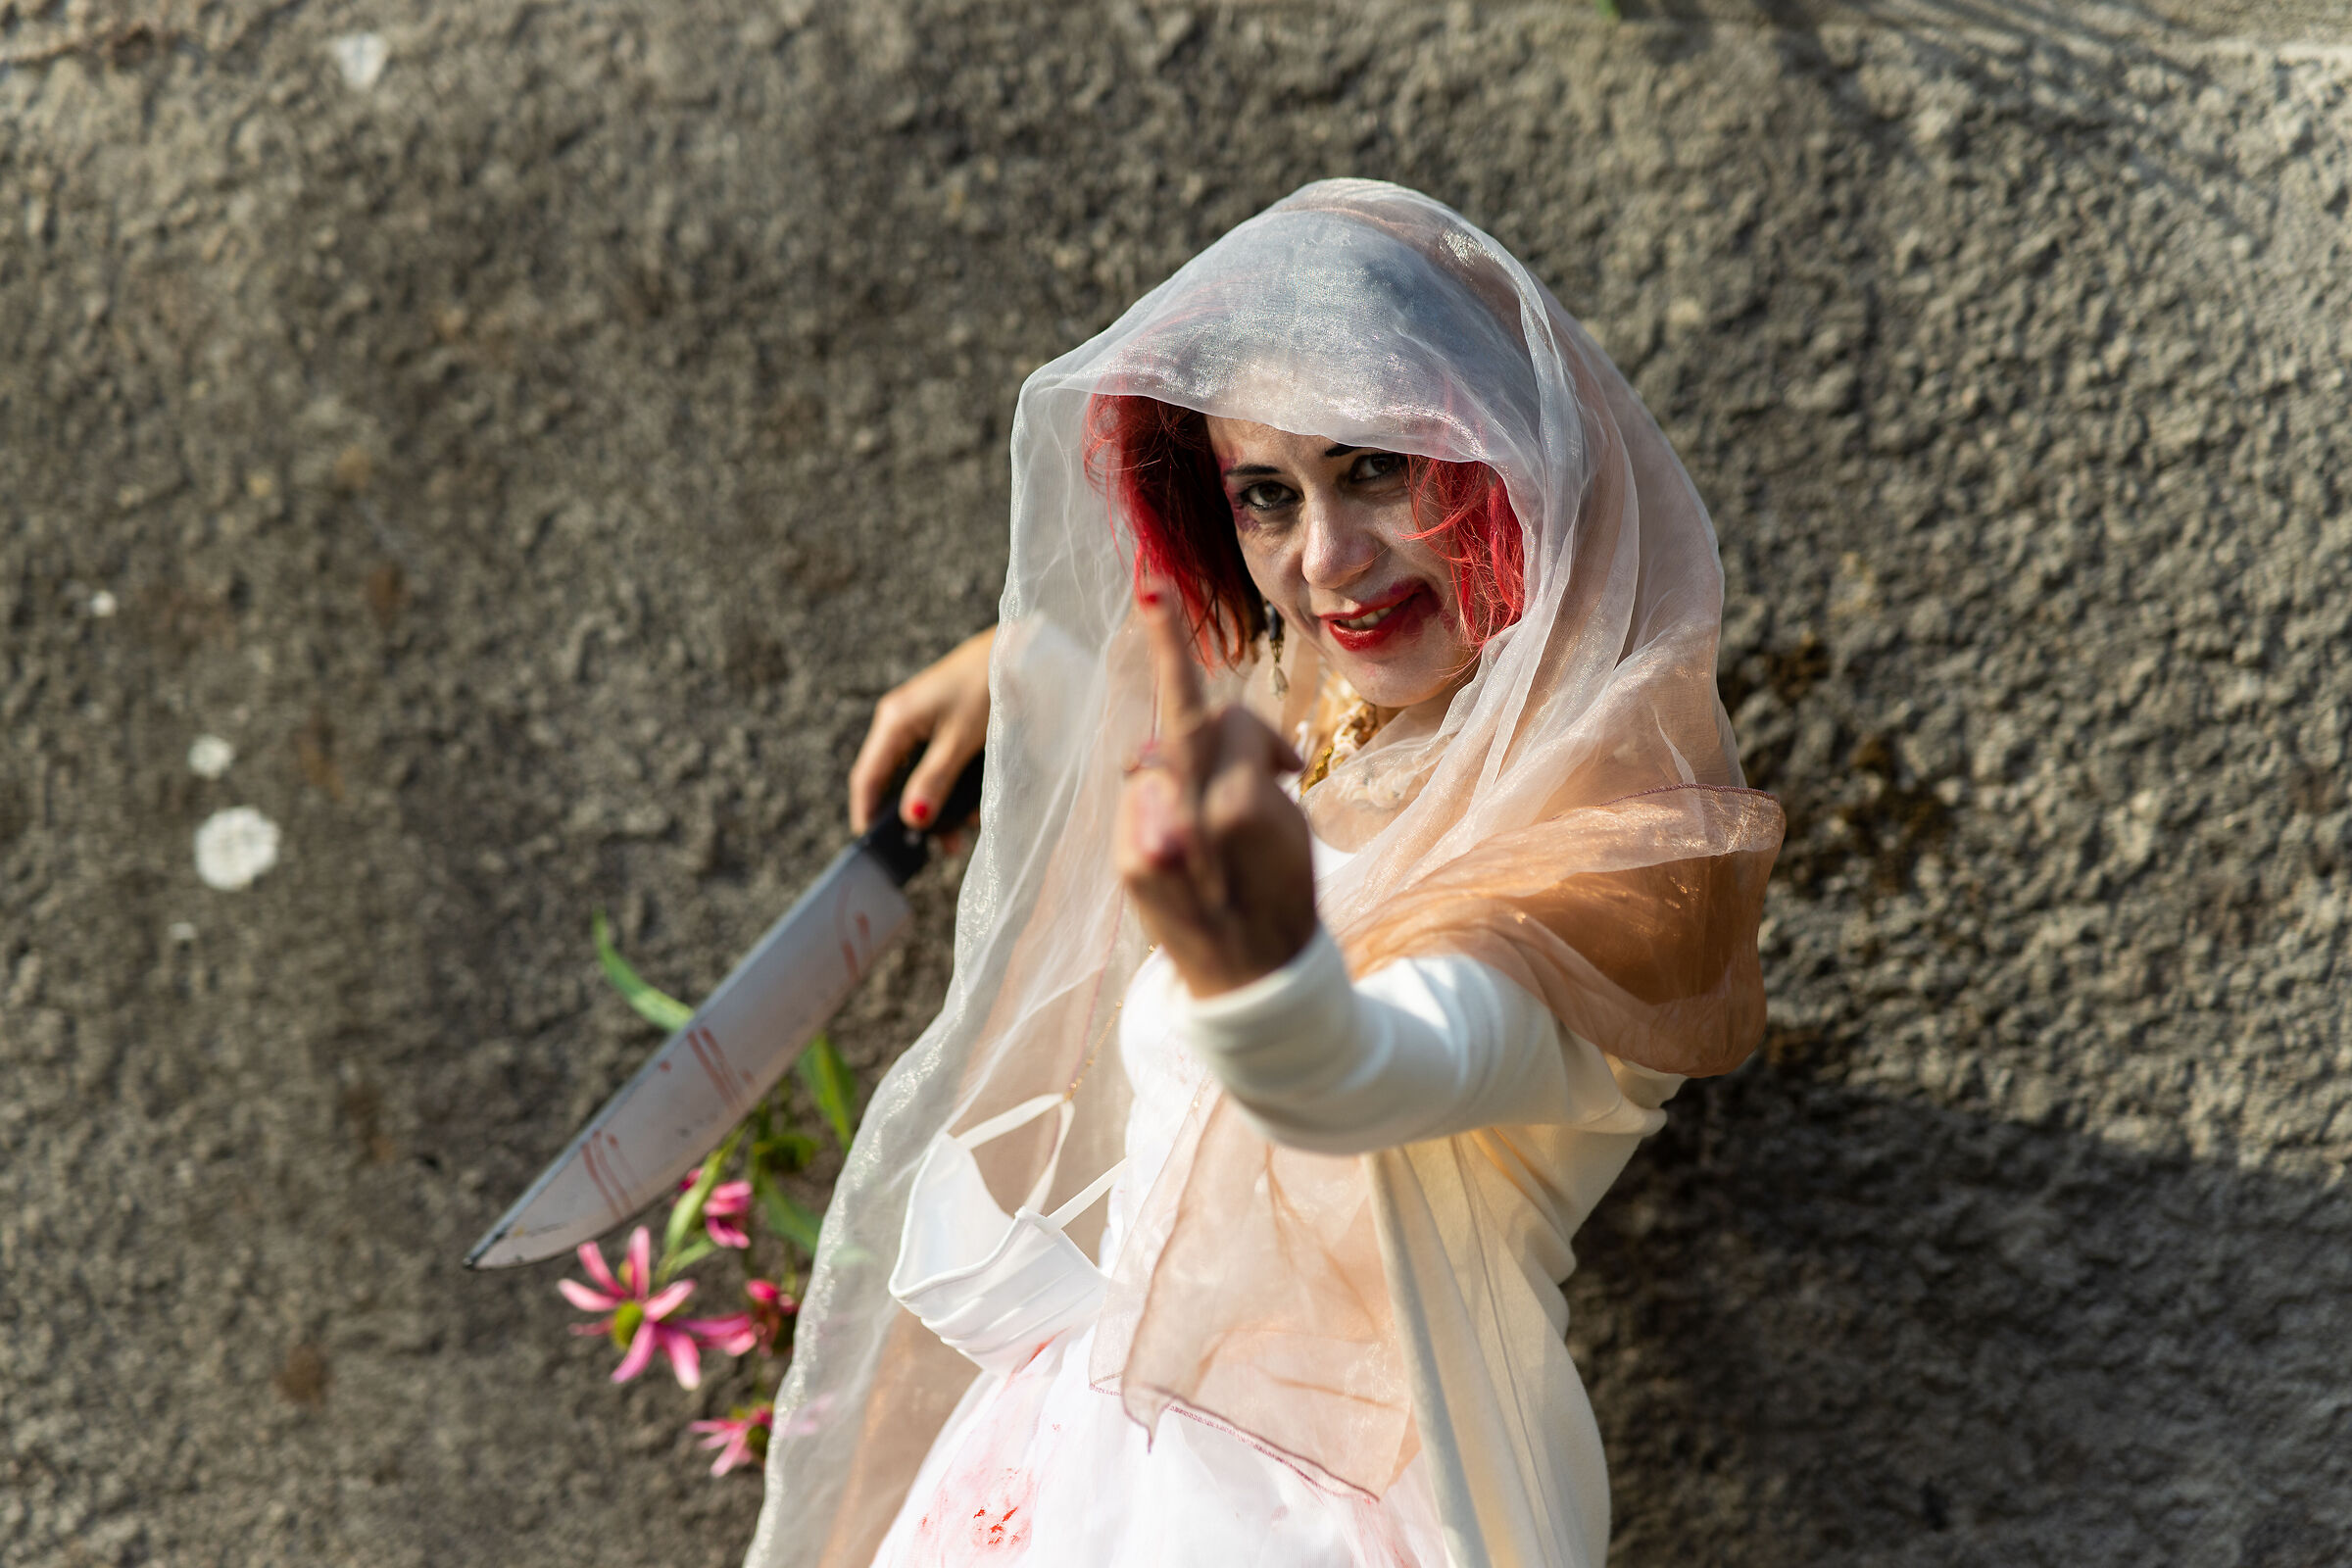 The Killer Bride...